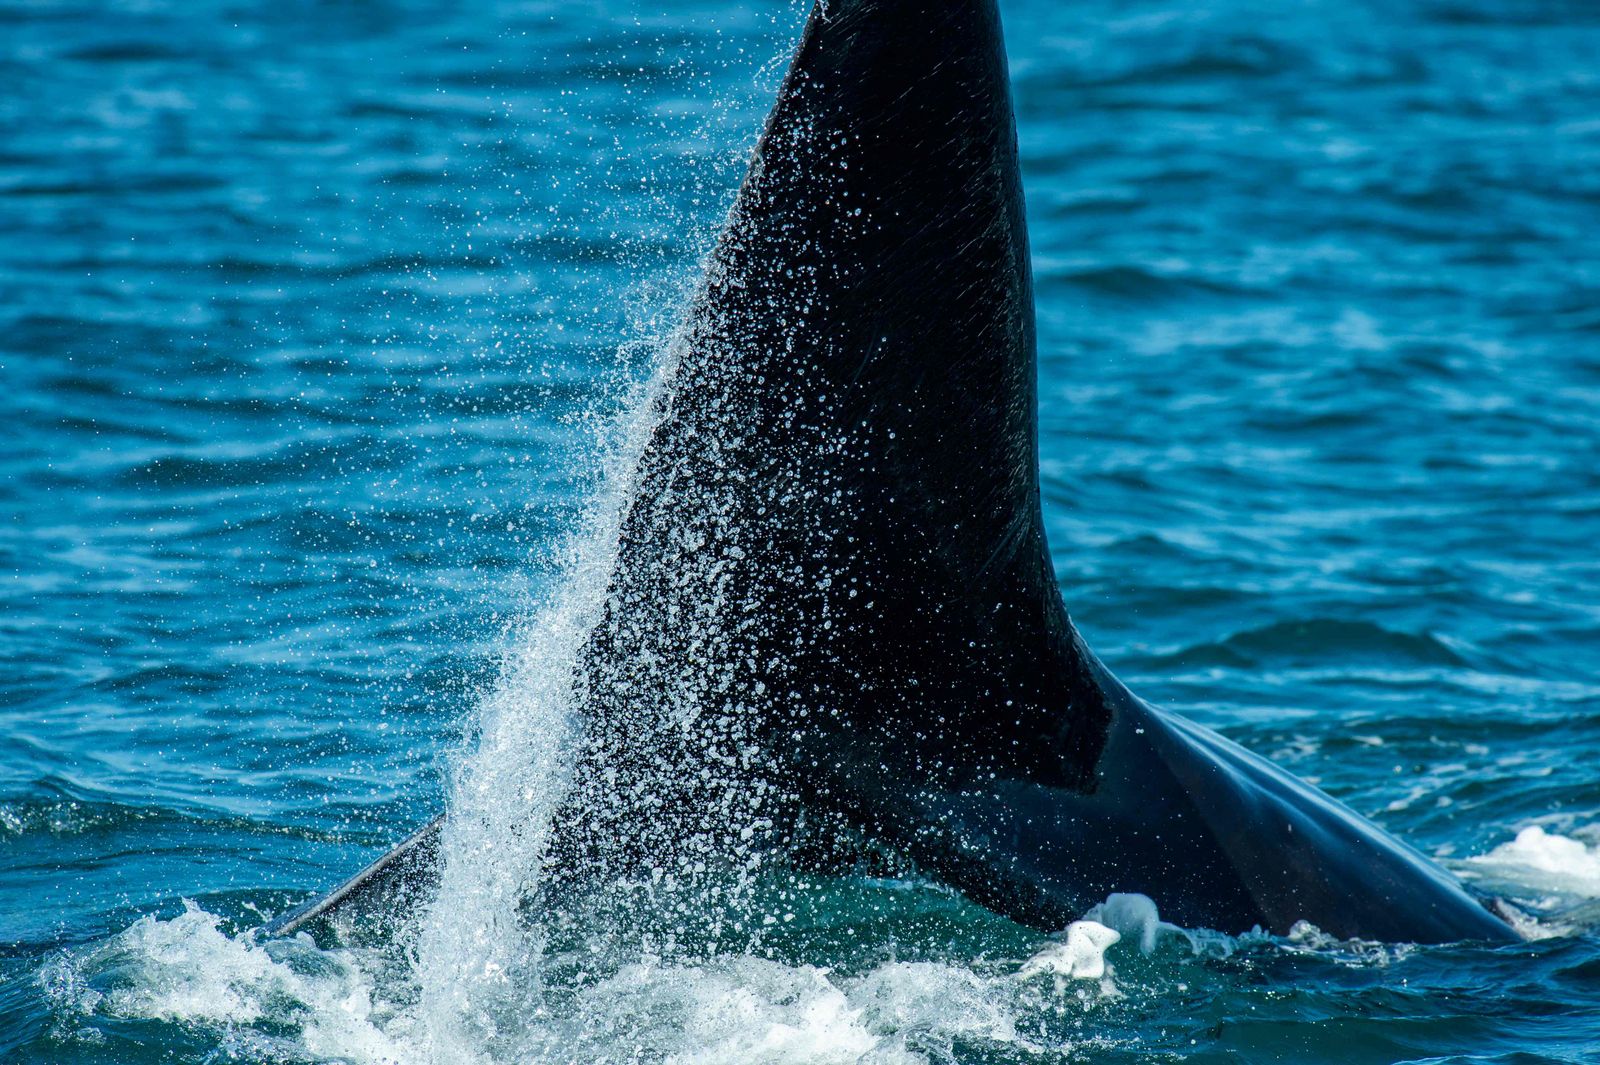 صورة لحوت أخذت أثناء رحلة استكشافية لمركز الدراسات الساحلية في كيب كود باي قبالة سواحل ماساتشوستس بالولايات المتحدة - 5 أبريل 2022 - AFP